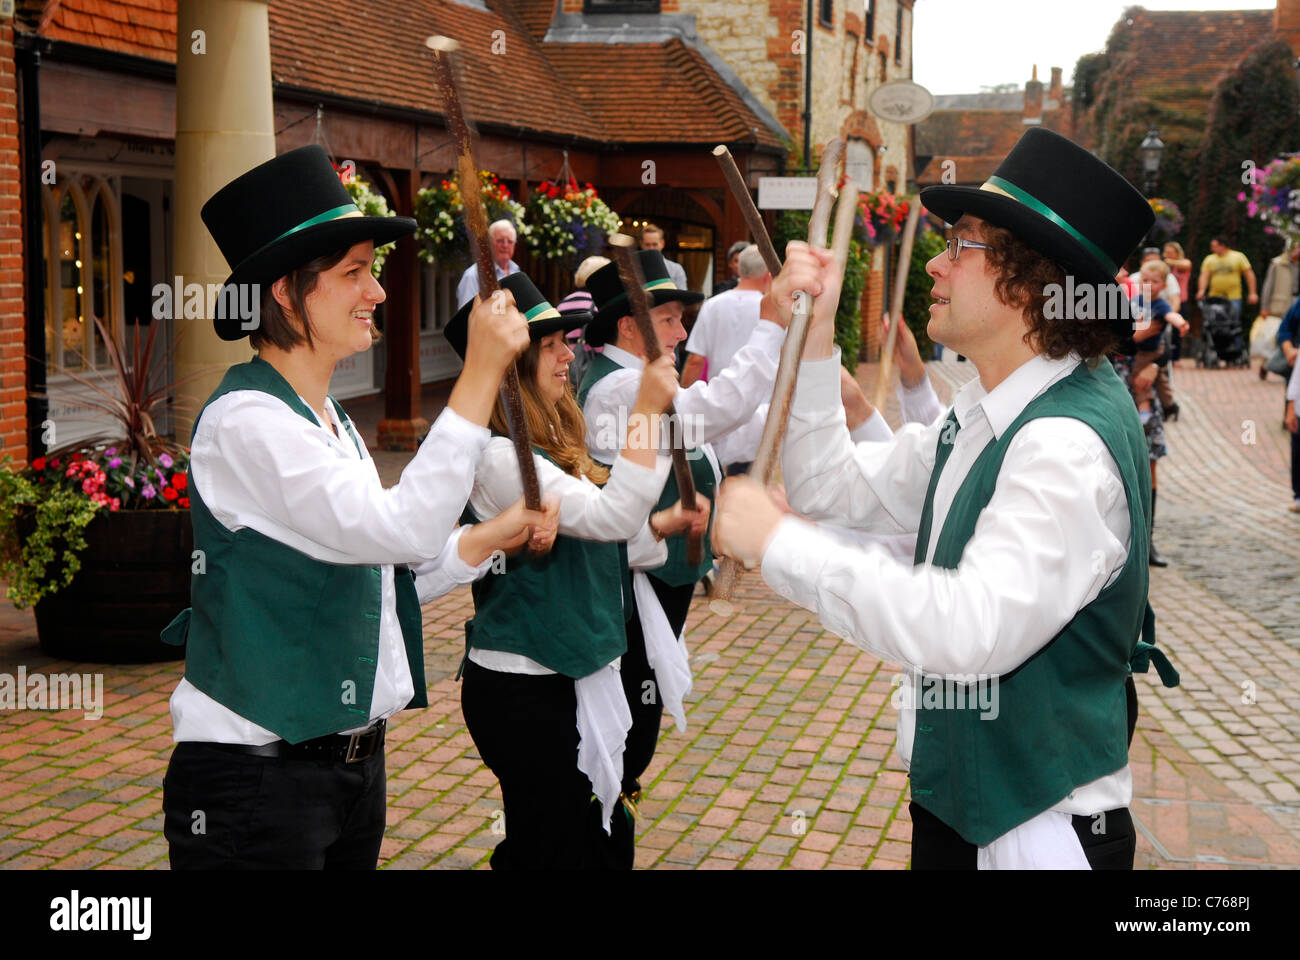 Morris dancers performing at a town Heritage Day, Lion & Lamb Yard, Farnham, Surrey, UK. Stock Photo